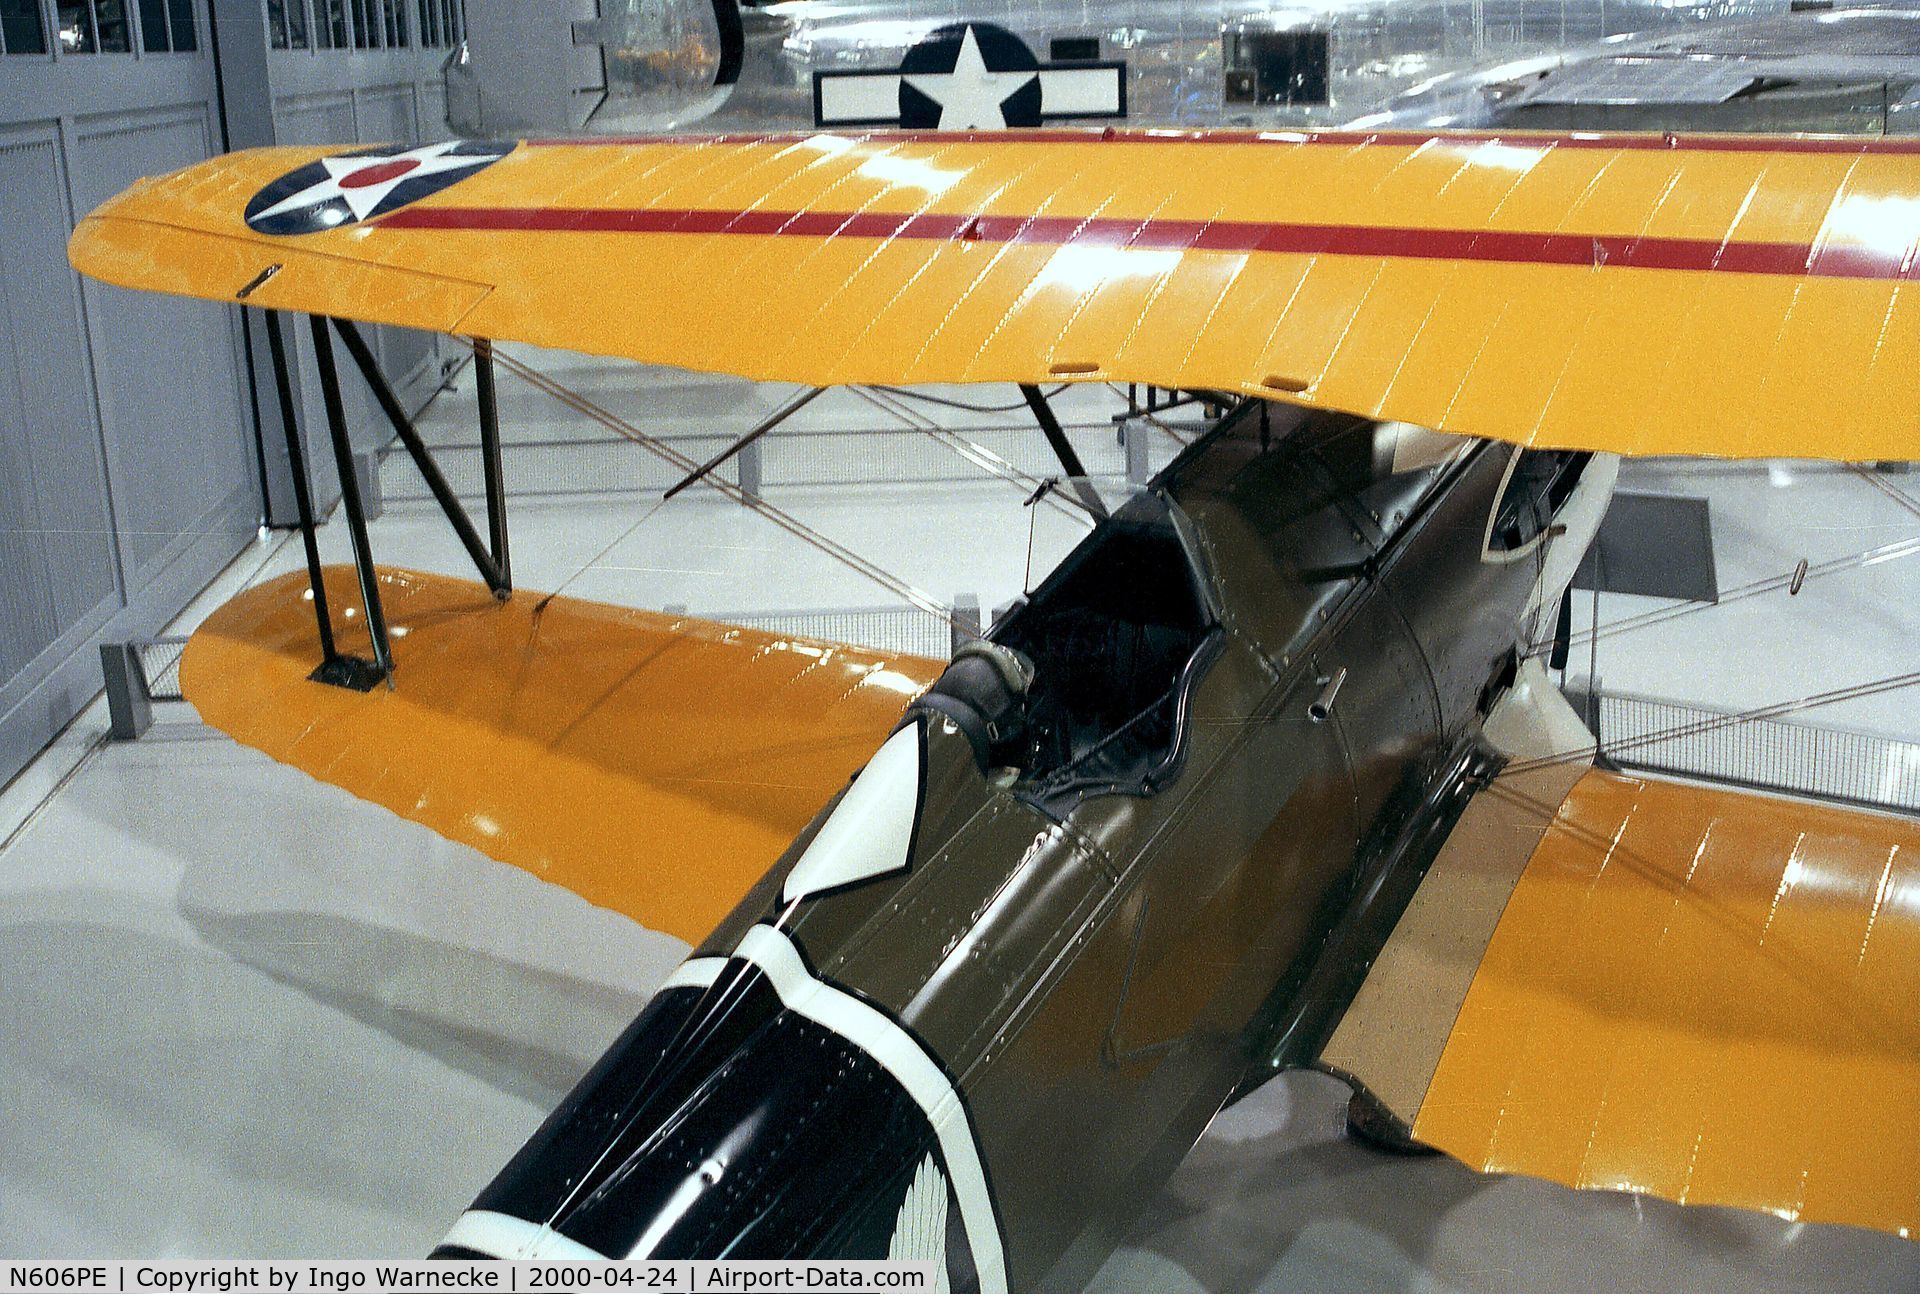 N606PE, 1992 Curtiss P-6E Hawk Replica C/N 32-260, Curtiss (Rosnick) P-6E Hawk replica at the EAA-Museum, Oshkosh WI